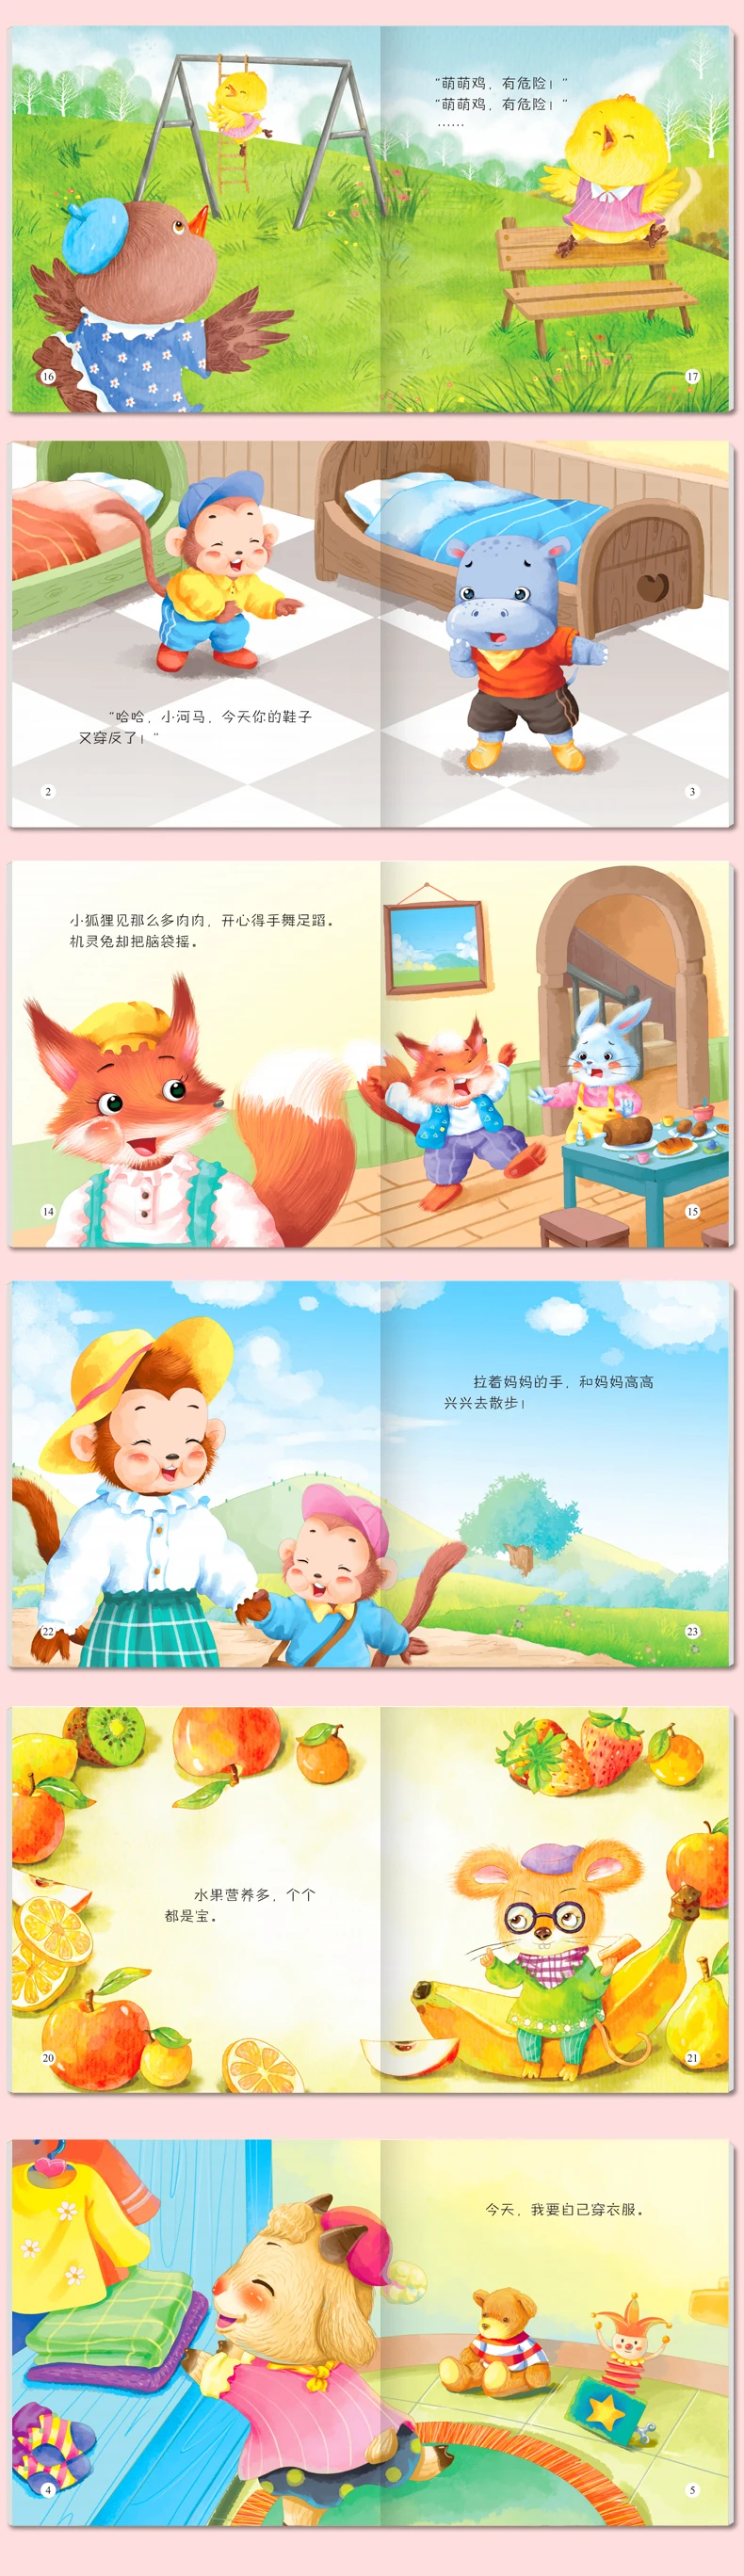 Милый медведь эмоциональное поведение управления детей Baby перед сном пиньинь истории фотографии книга китайский EQ учебных книг, набор из 30